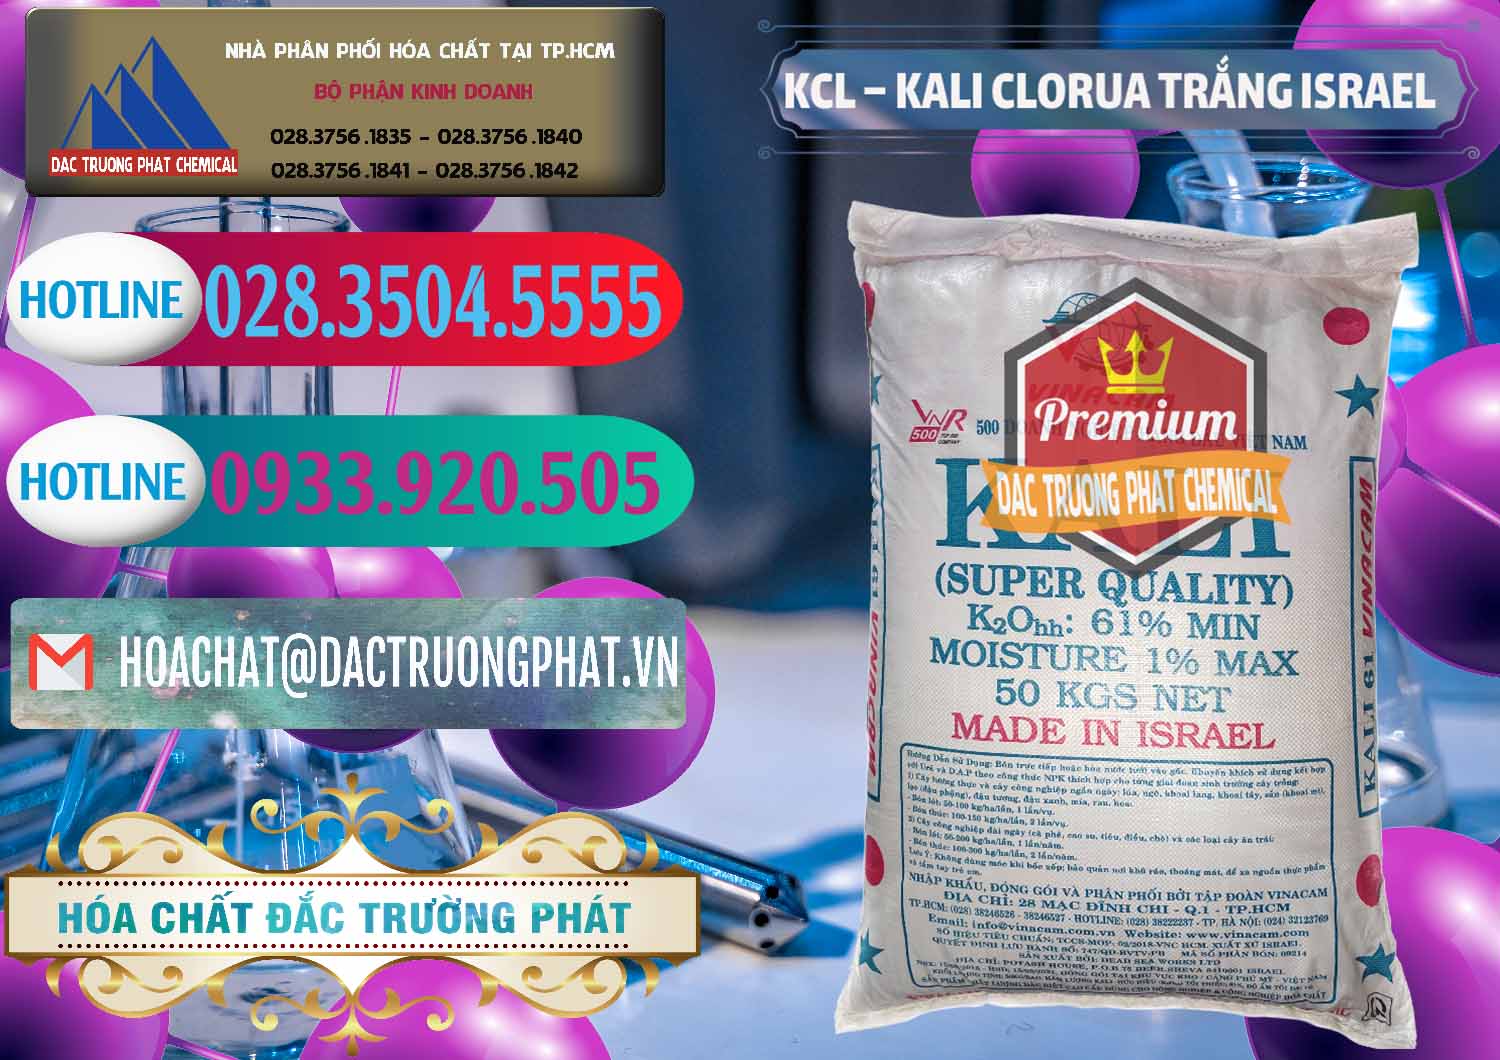 Cty chuyên bán và cung ứng KCL – Kali Clorua Trắng Israel - 0087 - Công ty phân phối ( cung cấp ) hóa chất tại TP.HCM - truongphat.vn